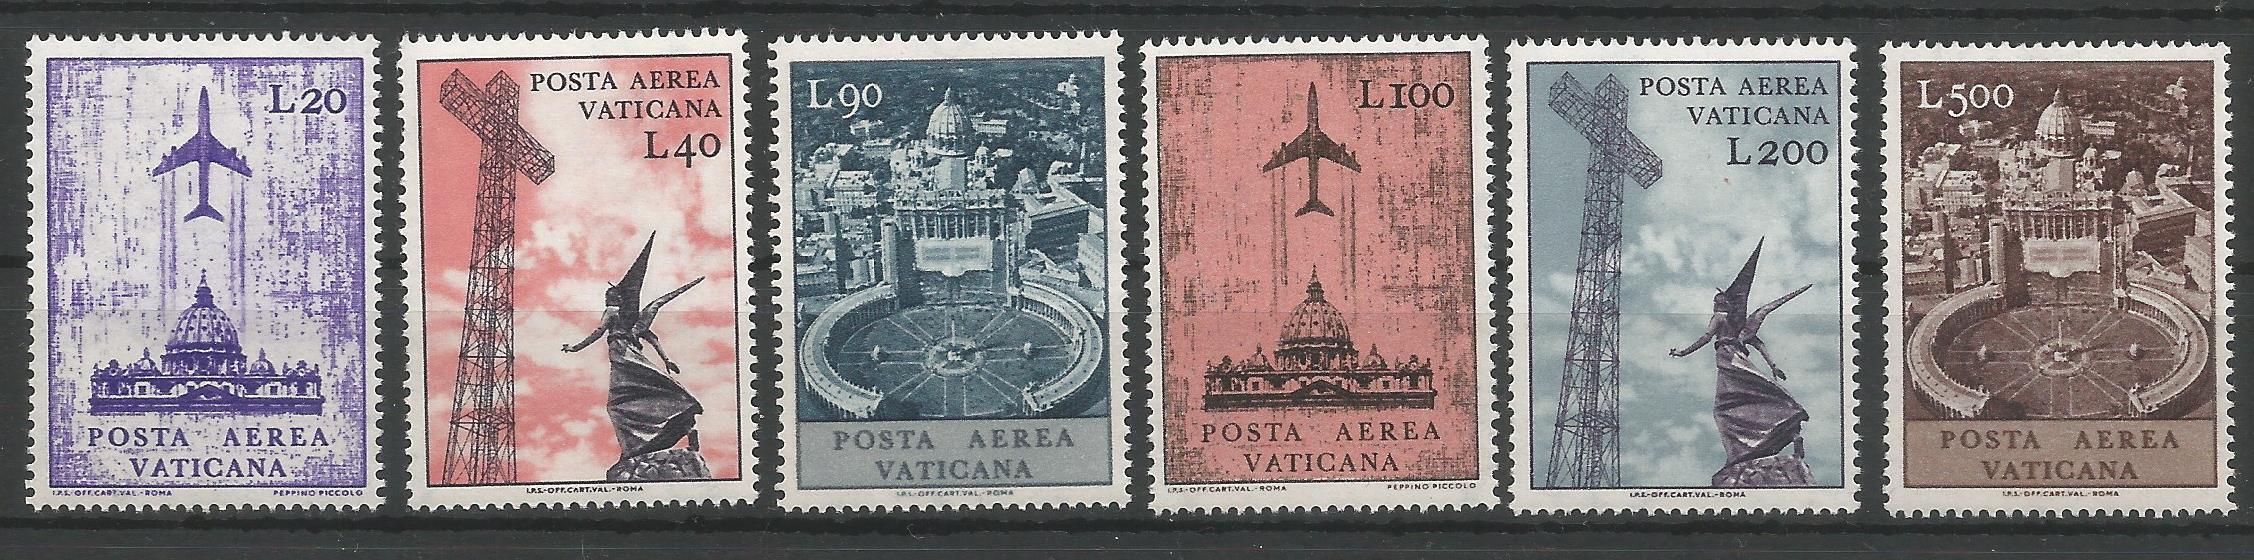 51607 - VATICANO - 1967 - Serie compl. 6 val. Posta Aerea nuovi - Unificato : A47/52 - VTC029